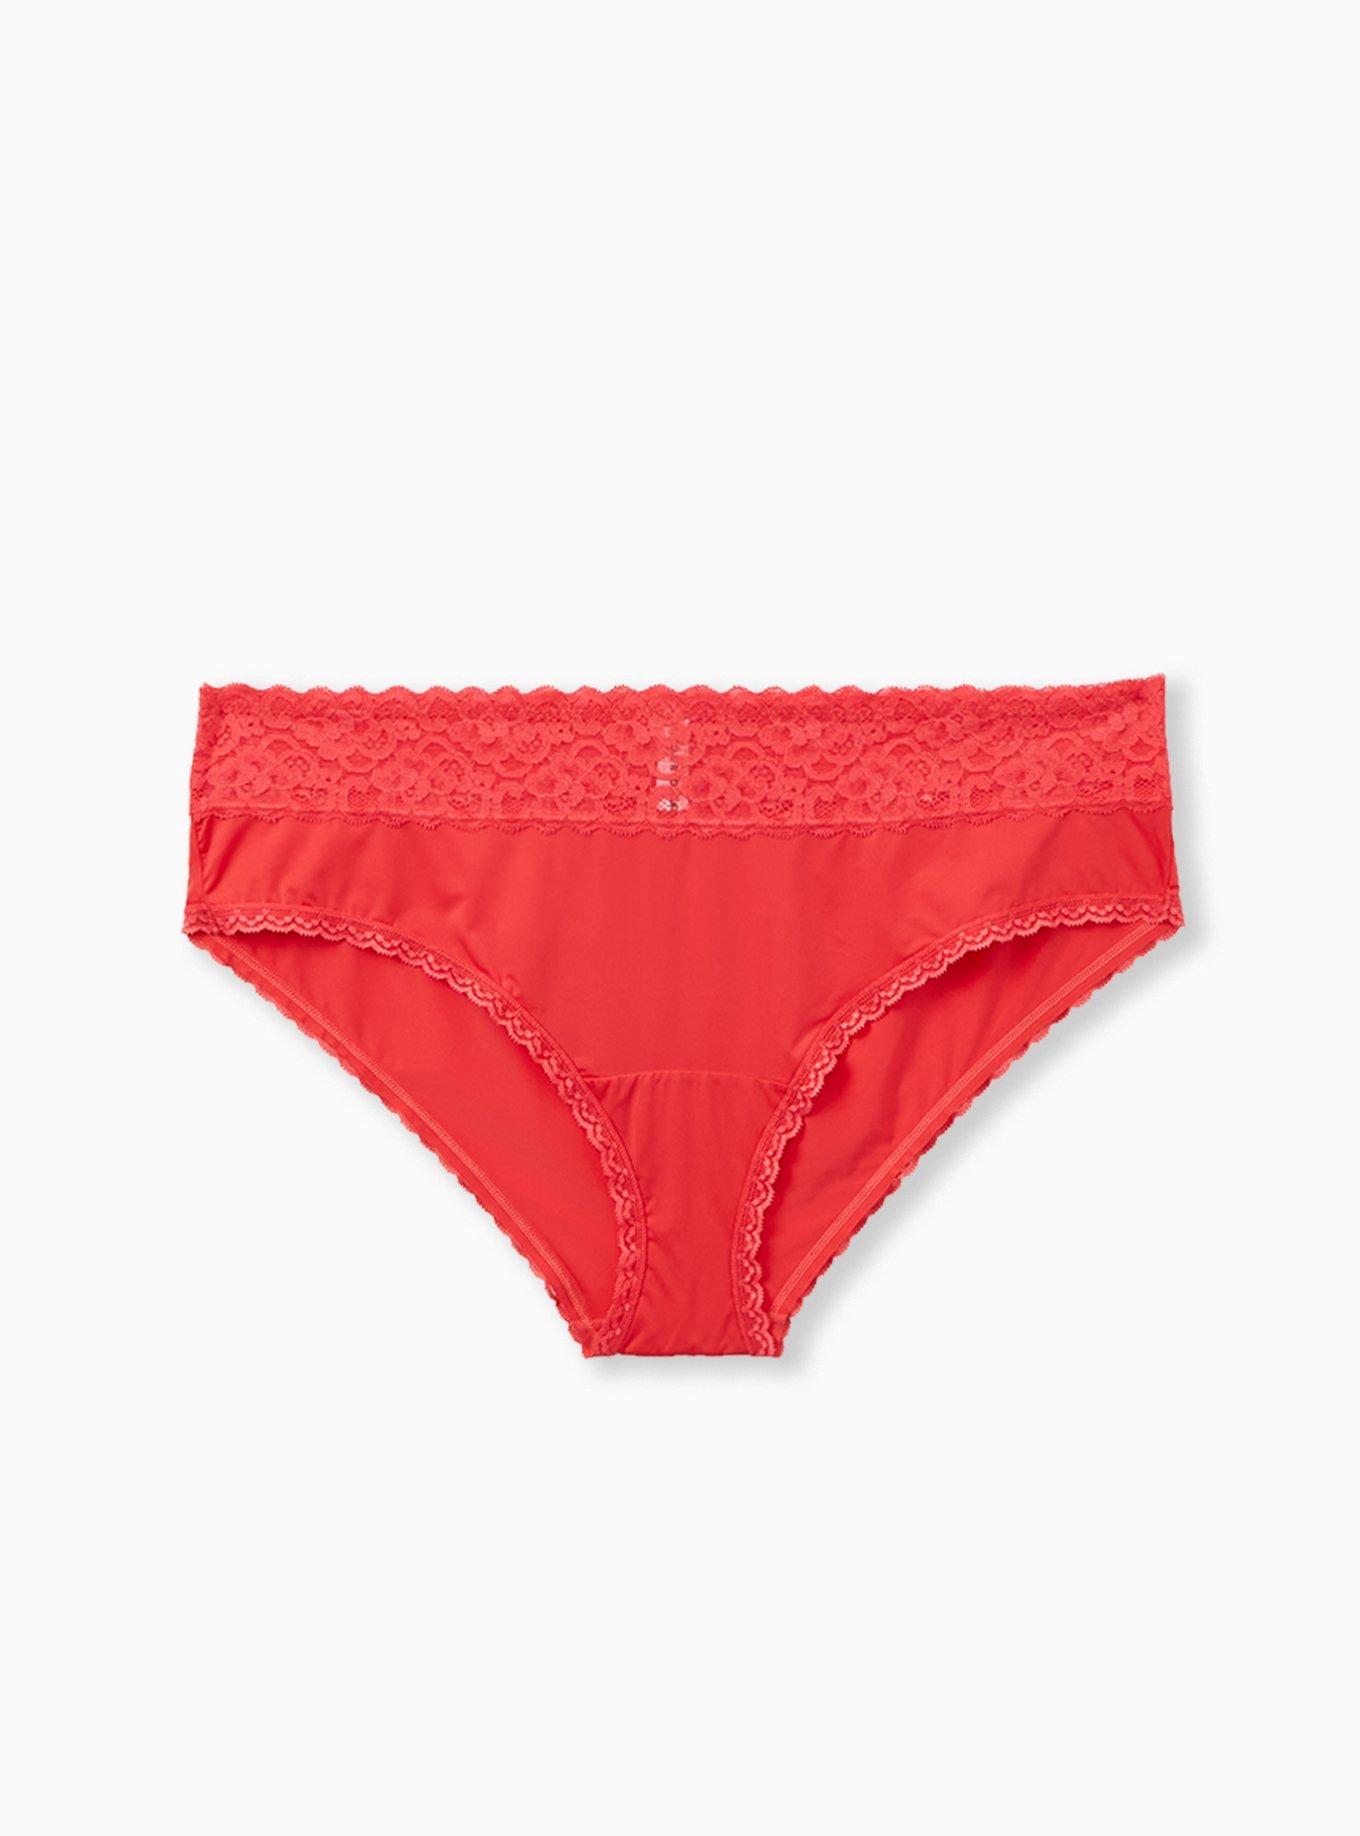 Torrid Curve Hipster Pink Orange Tie Dye Underwear Women's Size 2 New -  beyond exchange